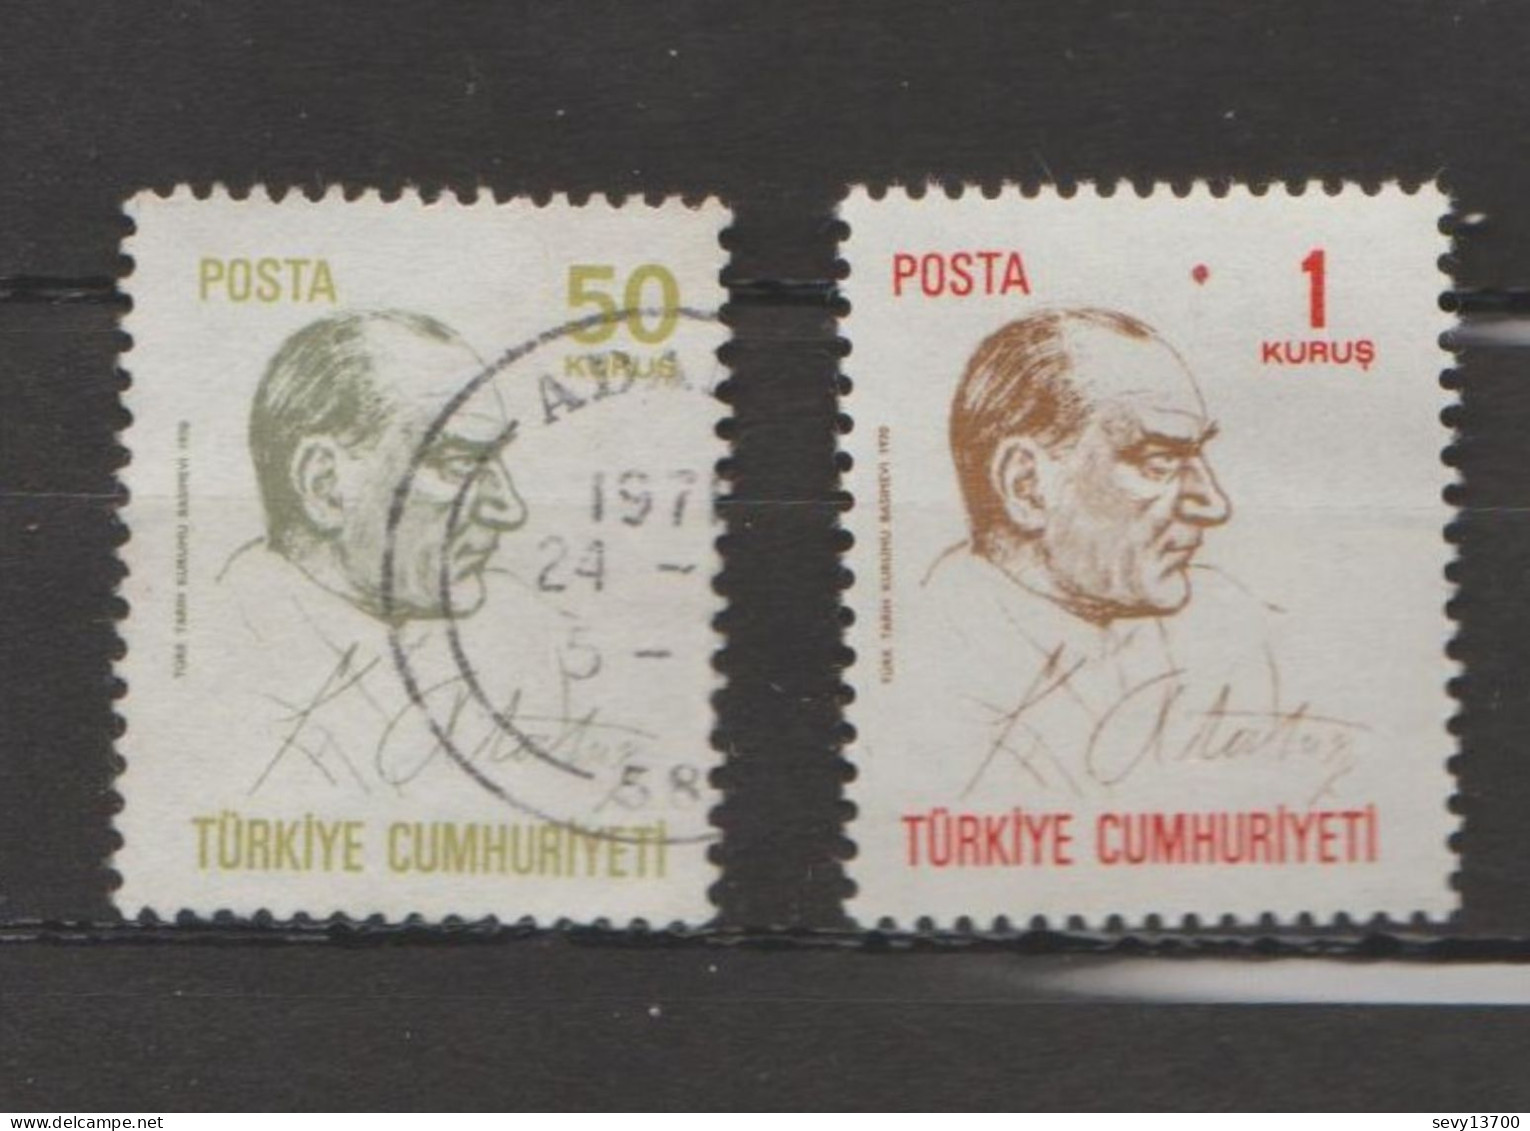 Turquie - Lot 33 Timbres Atatürk Mi 1276 - Mi 1280 - Mi 1301 - Mi 958 Y - Mi 946 Neuf - Mi 960 Y - Mi1493 - 1495 - 2172 - Collections, Lots & Series